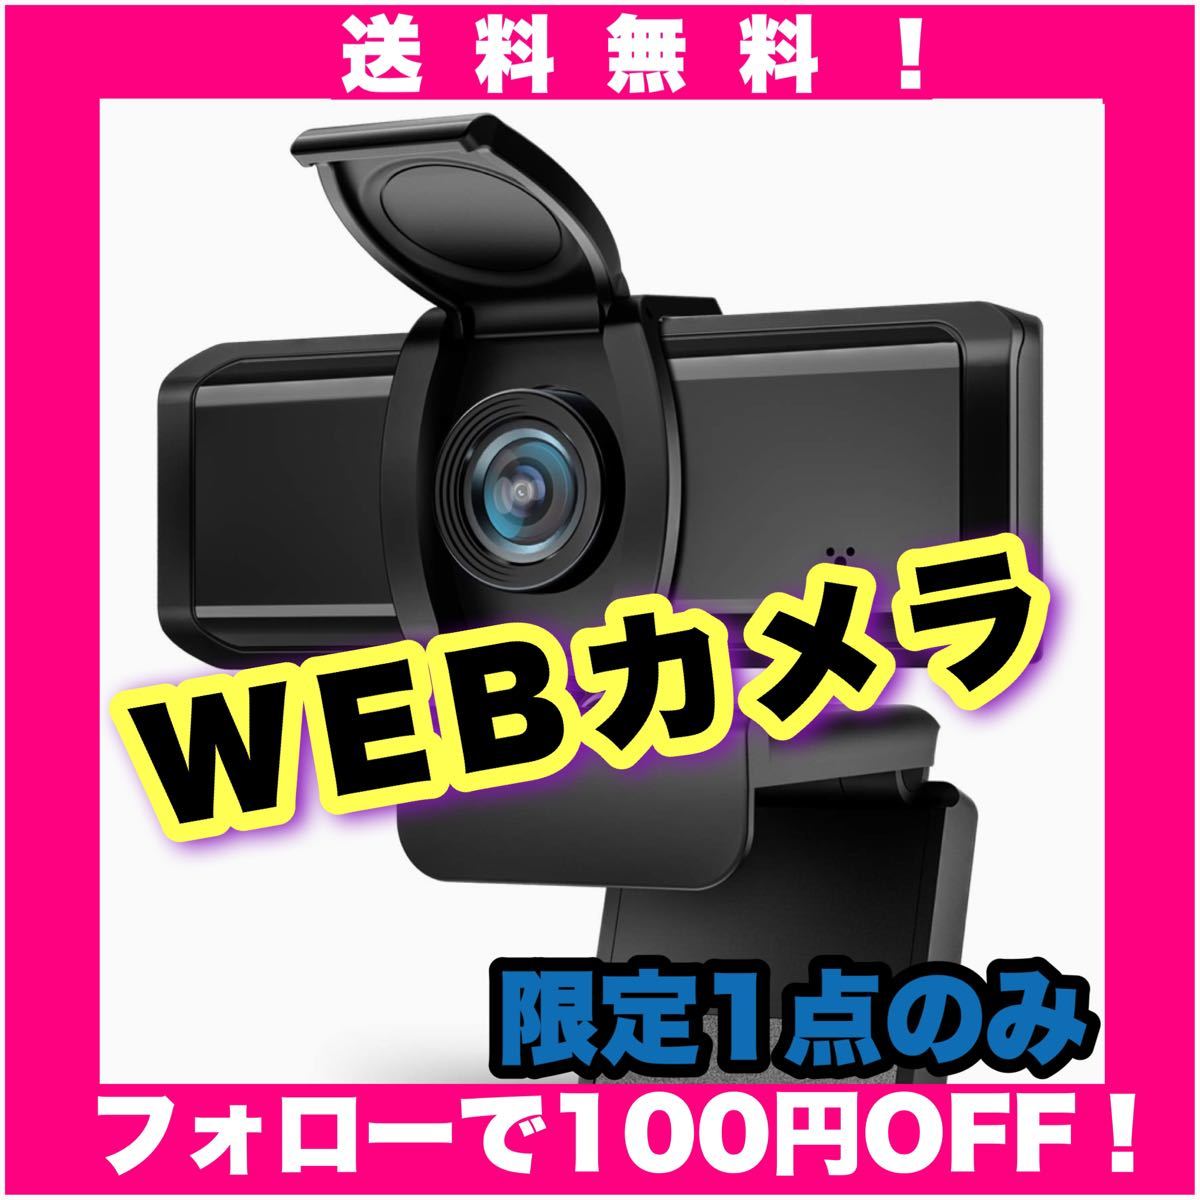 WEBカメラ Wansview ウェブカメラ フルHD 1080P 200万画像